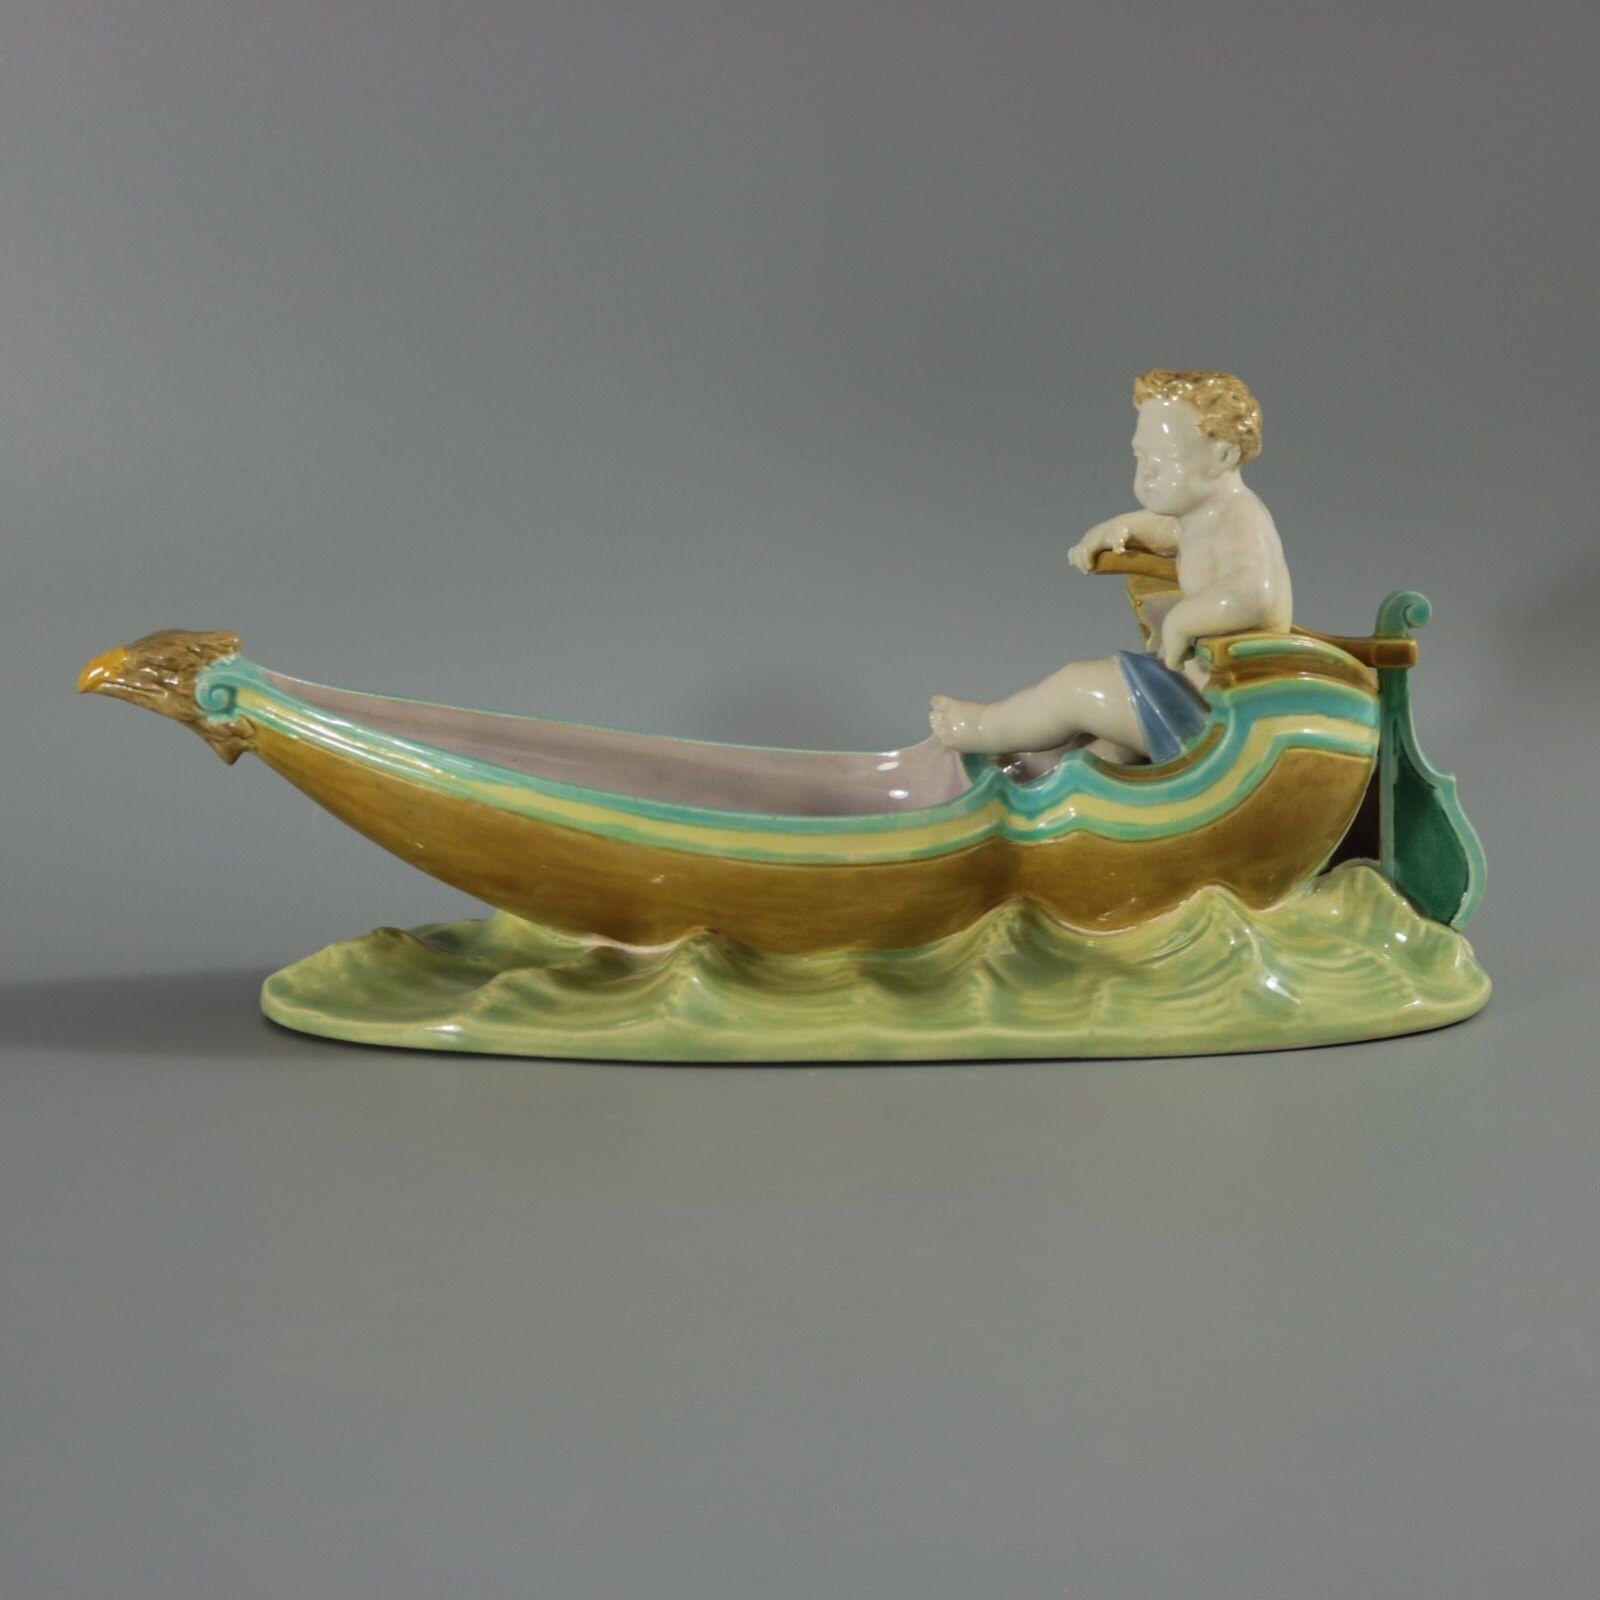 Plat figuratif en majolique Royal Worcester représentant un putto assis sur une gondole, avec une figure d'aigle. Coloration : turquoise, blanc, brun, sont prédominants. La pièce porte les marques du fabricant de la poterie Royal Worcester.